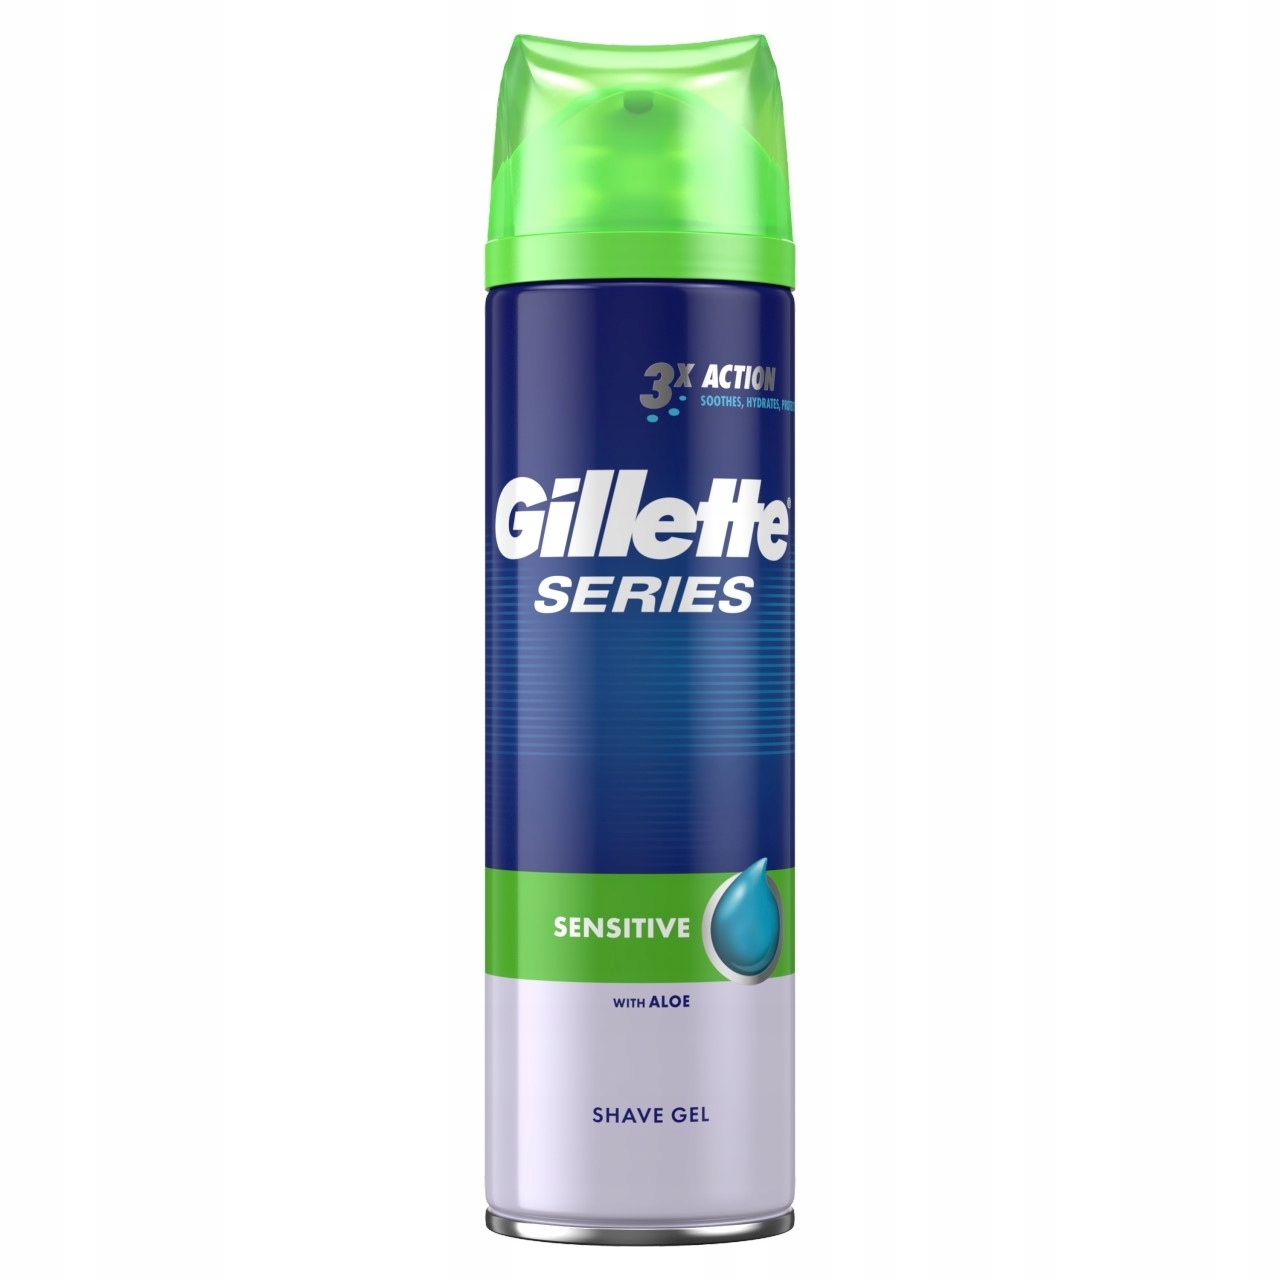 Gillette Series, żel do golenia dla skóry wrażliwej, 200ml